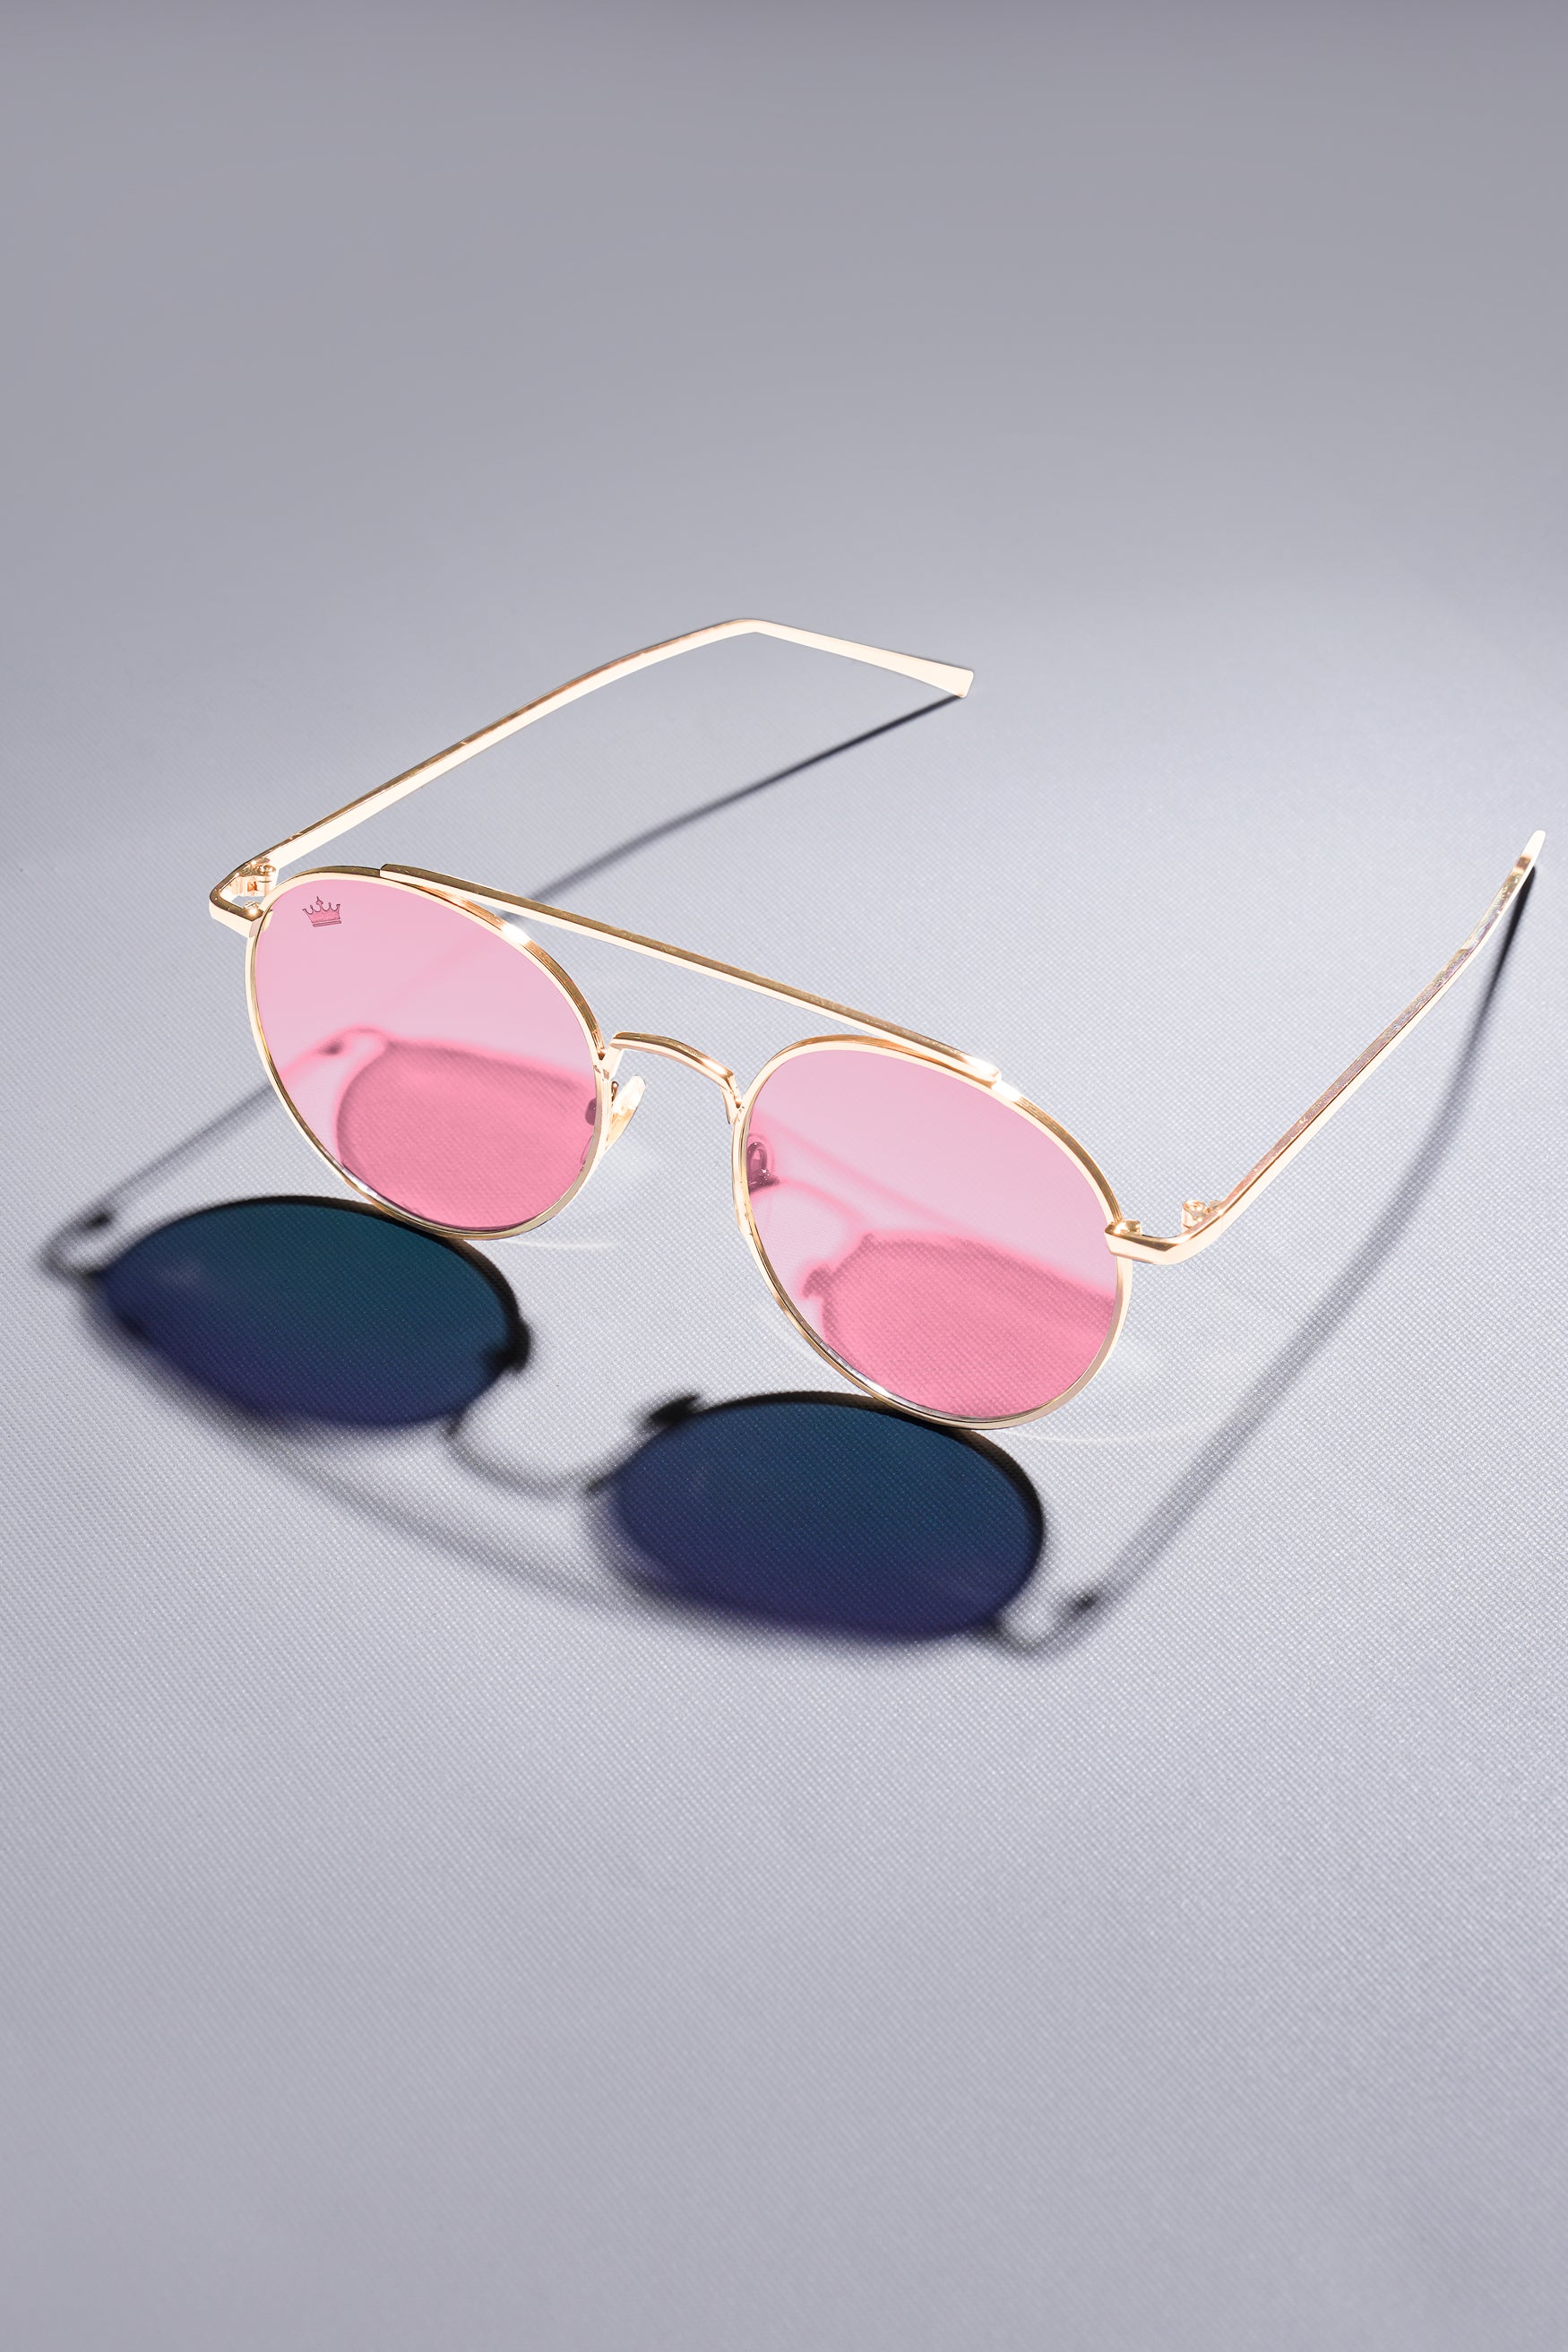 Retro Clear Aviator Sunglasses | Tubular 80s – Bold Fashioned